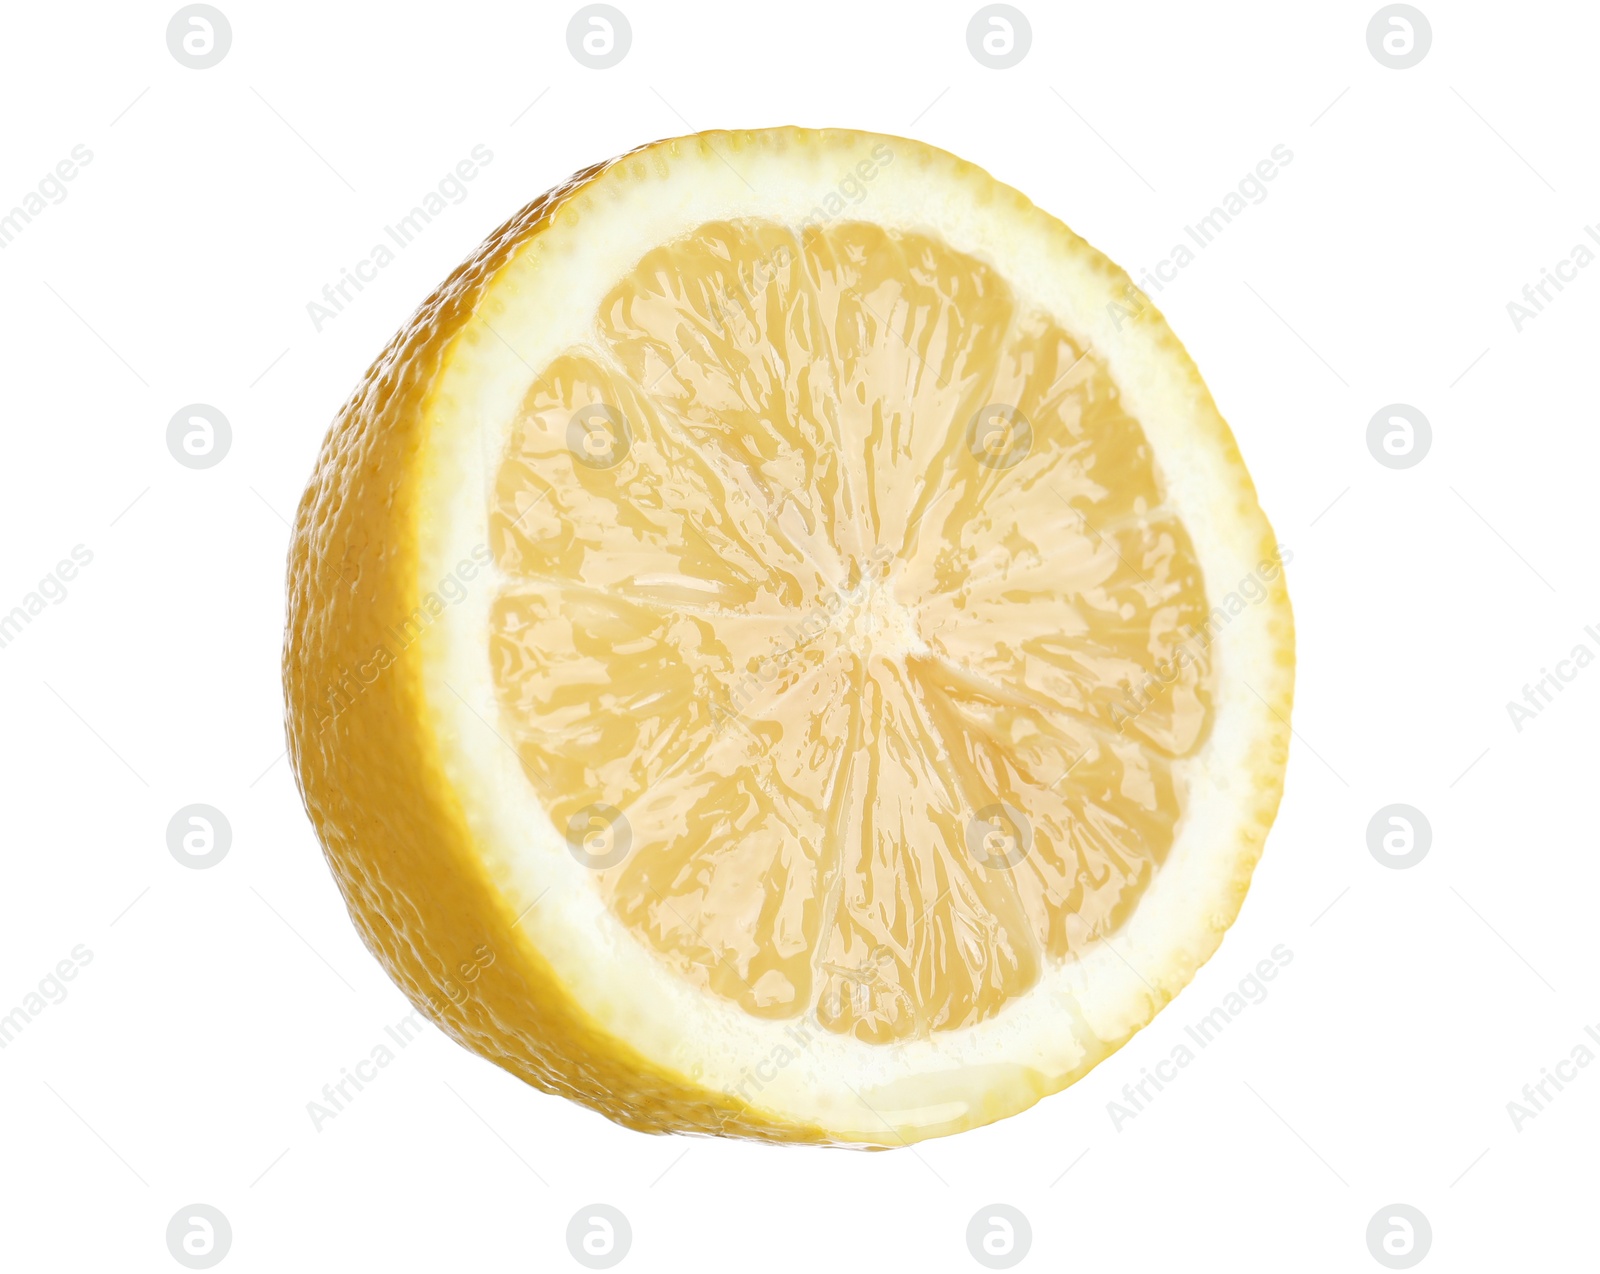 Photo of Half of fresh lemon isolated on white